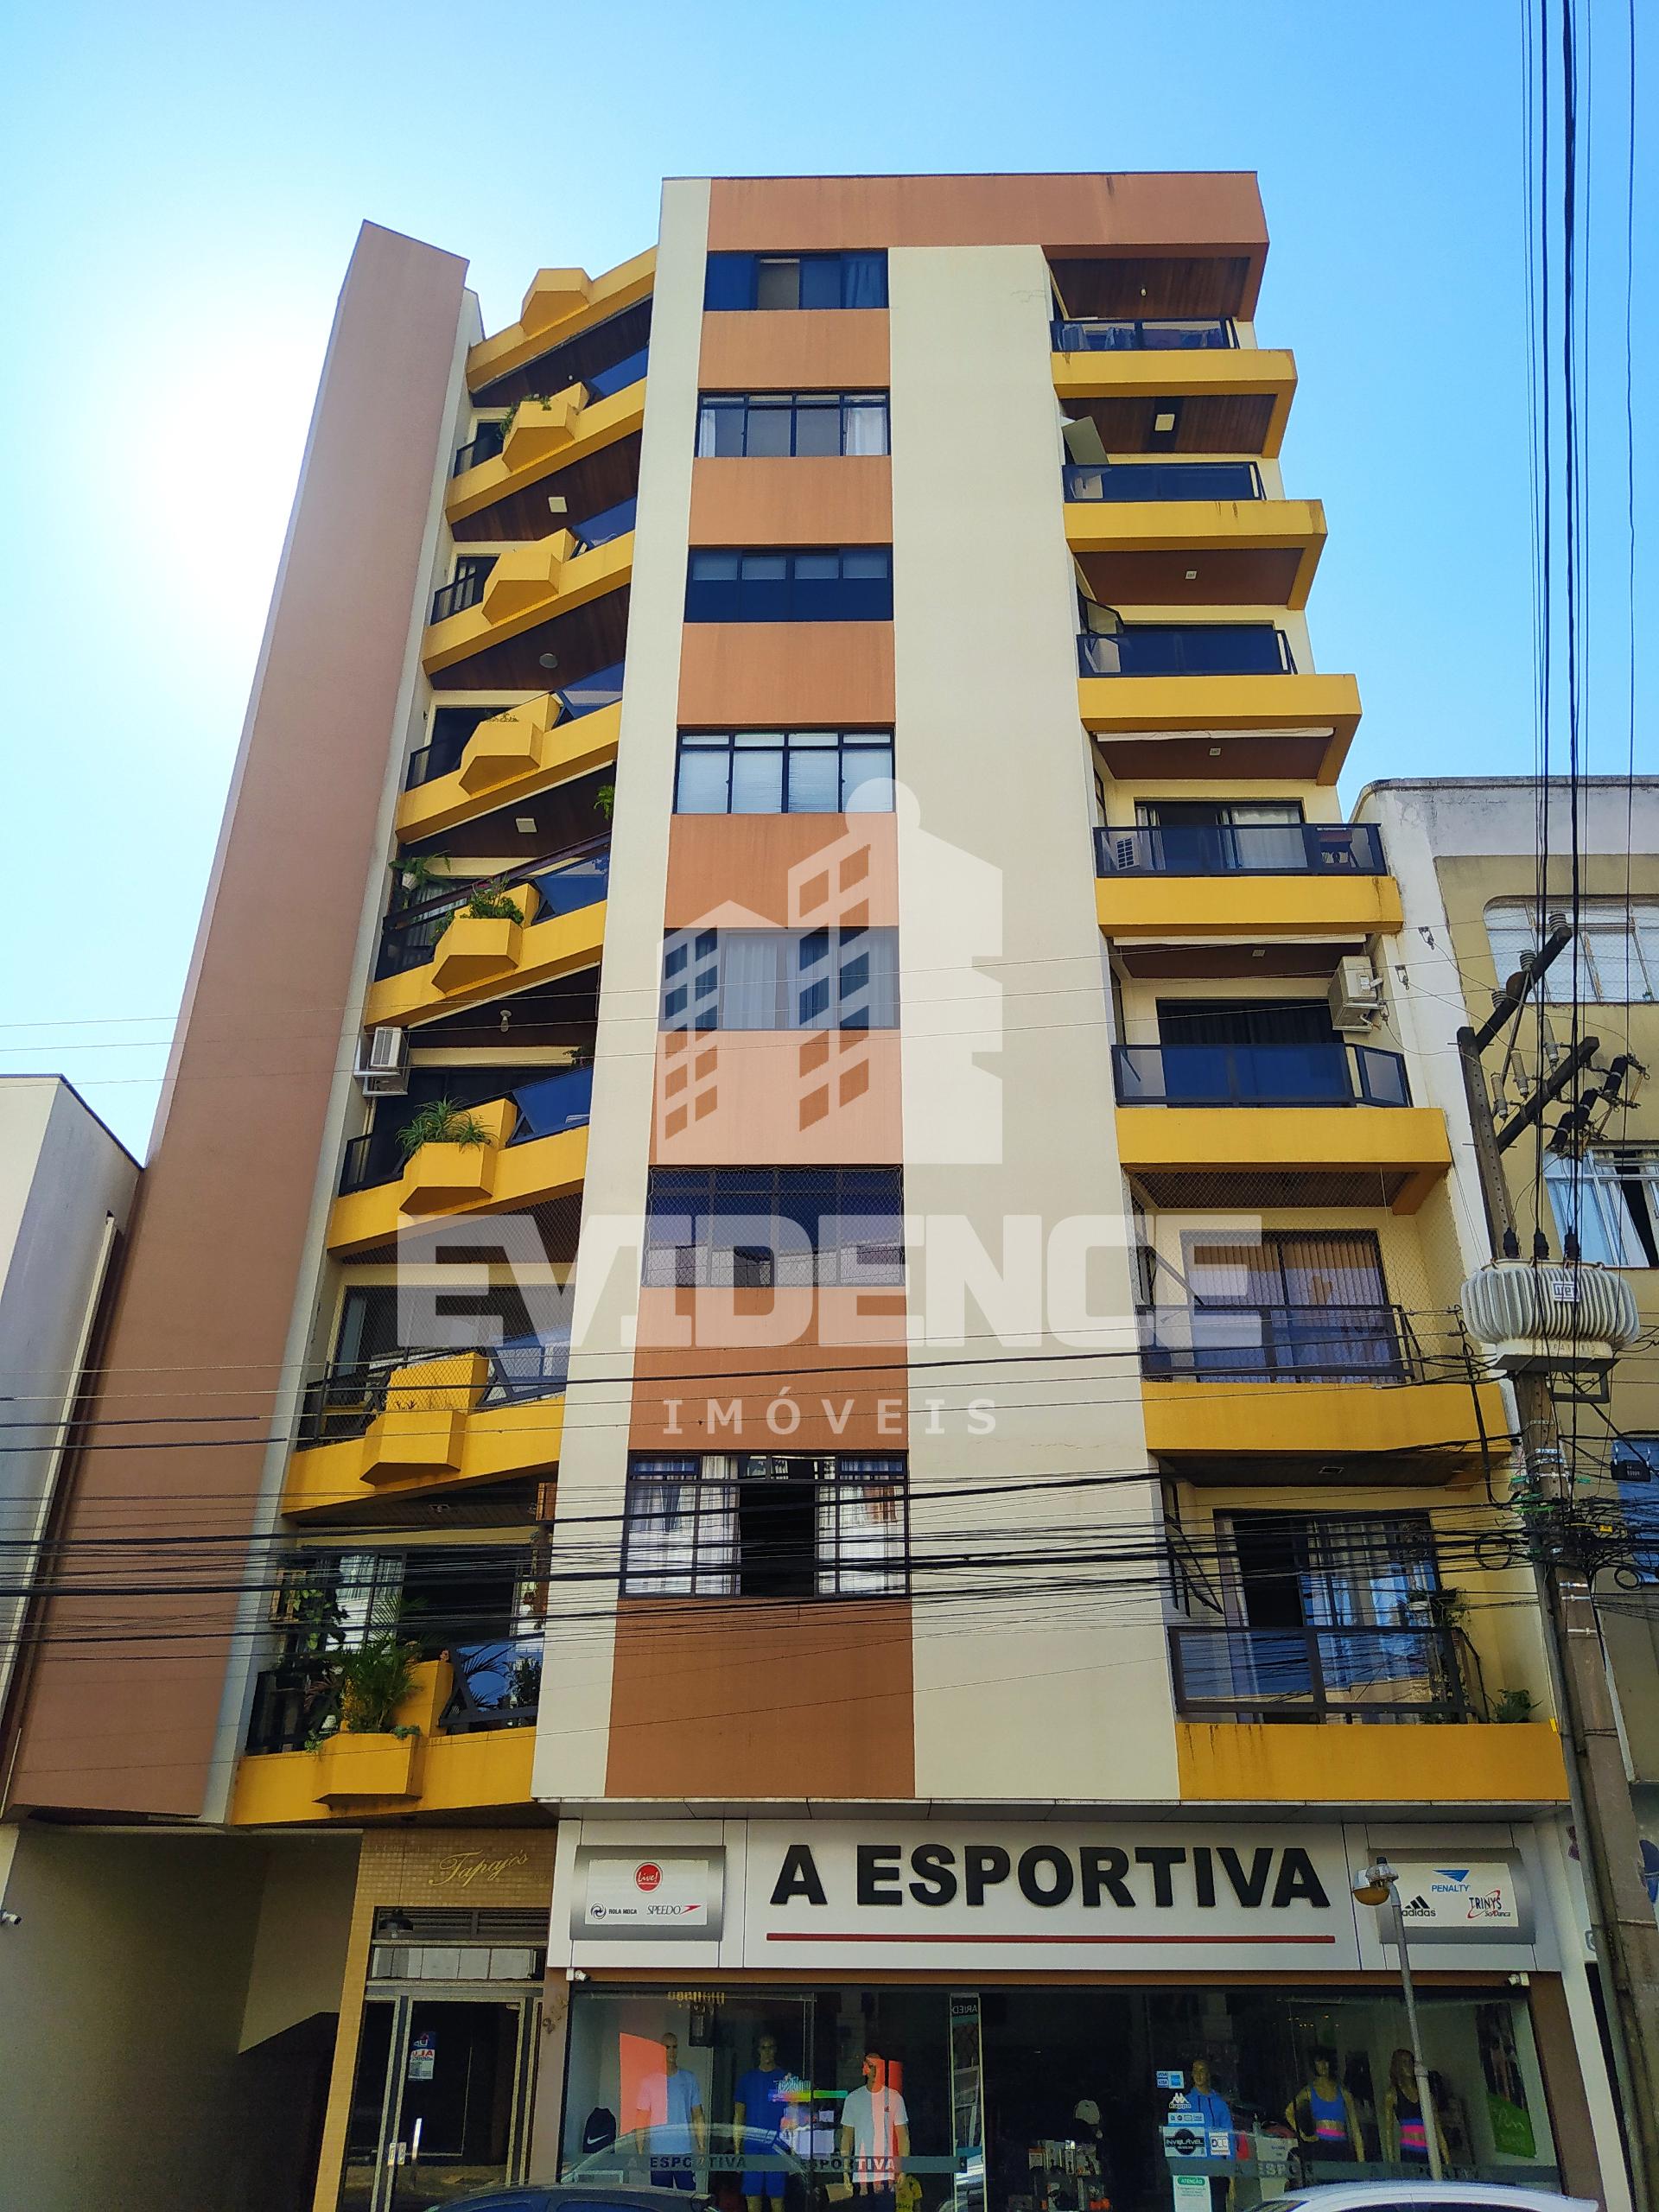 Apartamento com 3 dormitórios à venda,220.43 m², CENTRO, PATO BRANCO - PR